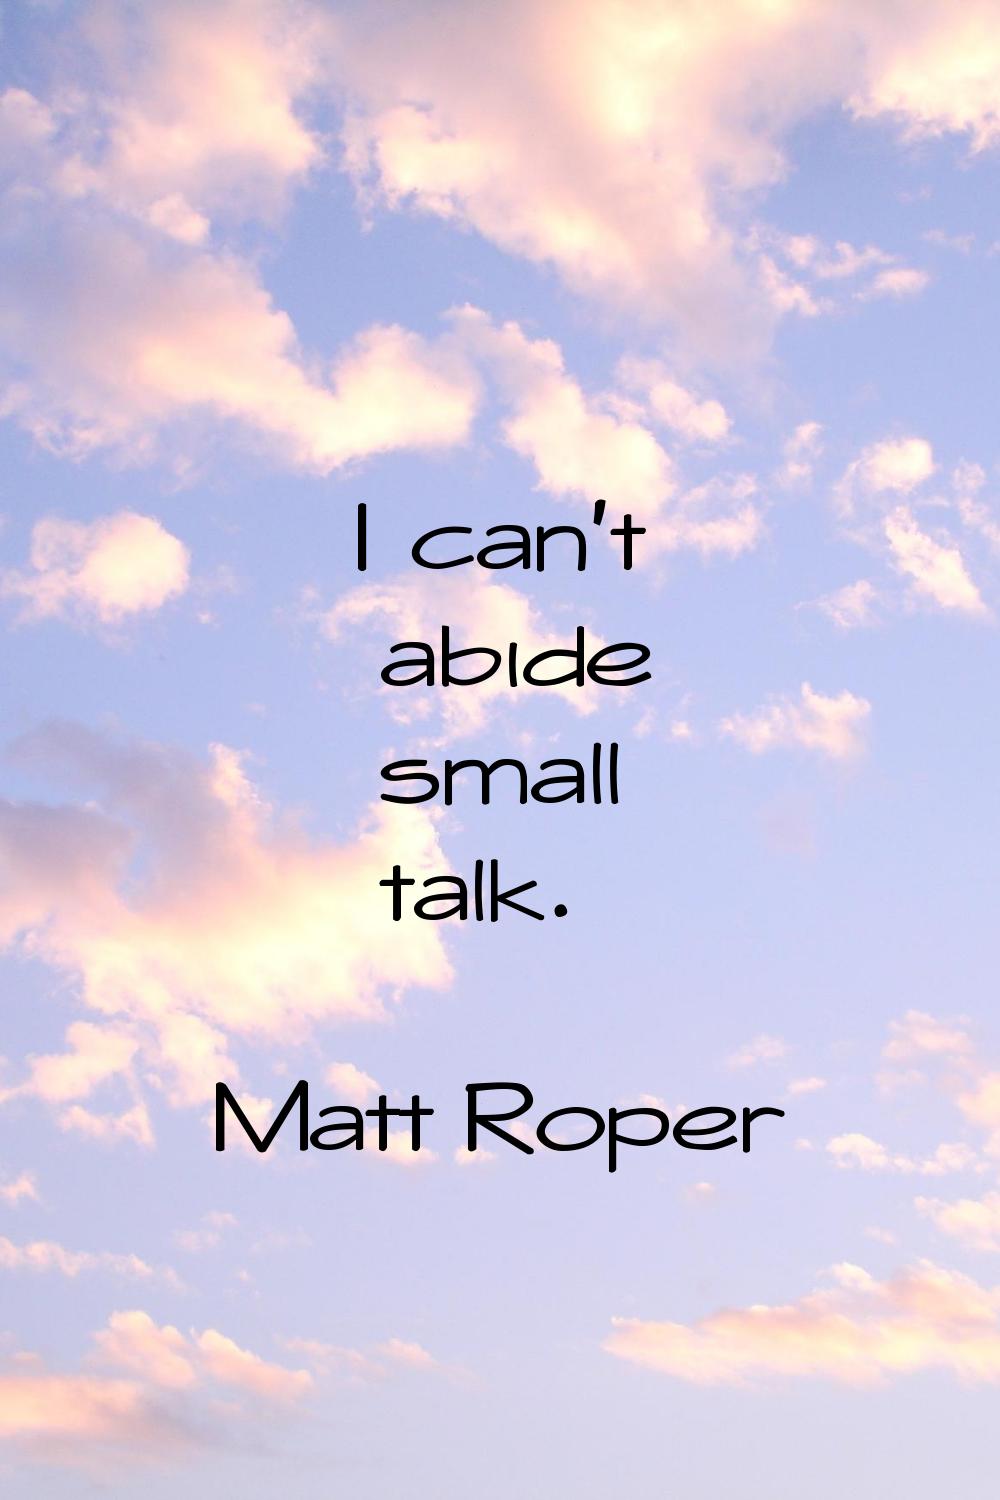 I can't abide small talk.